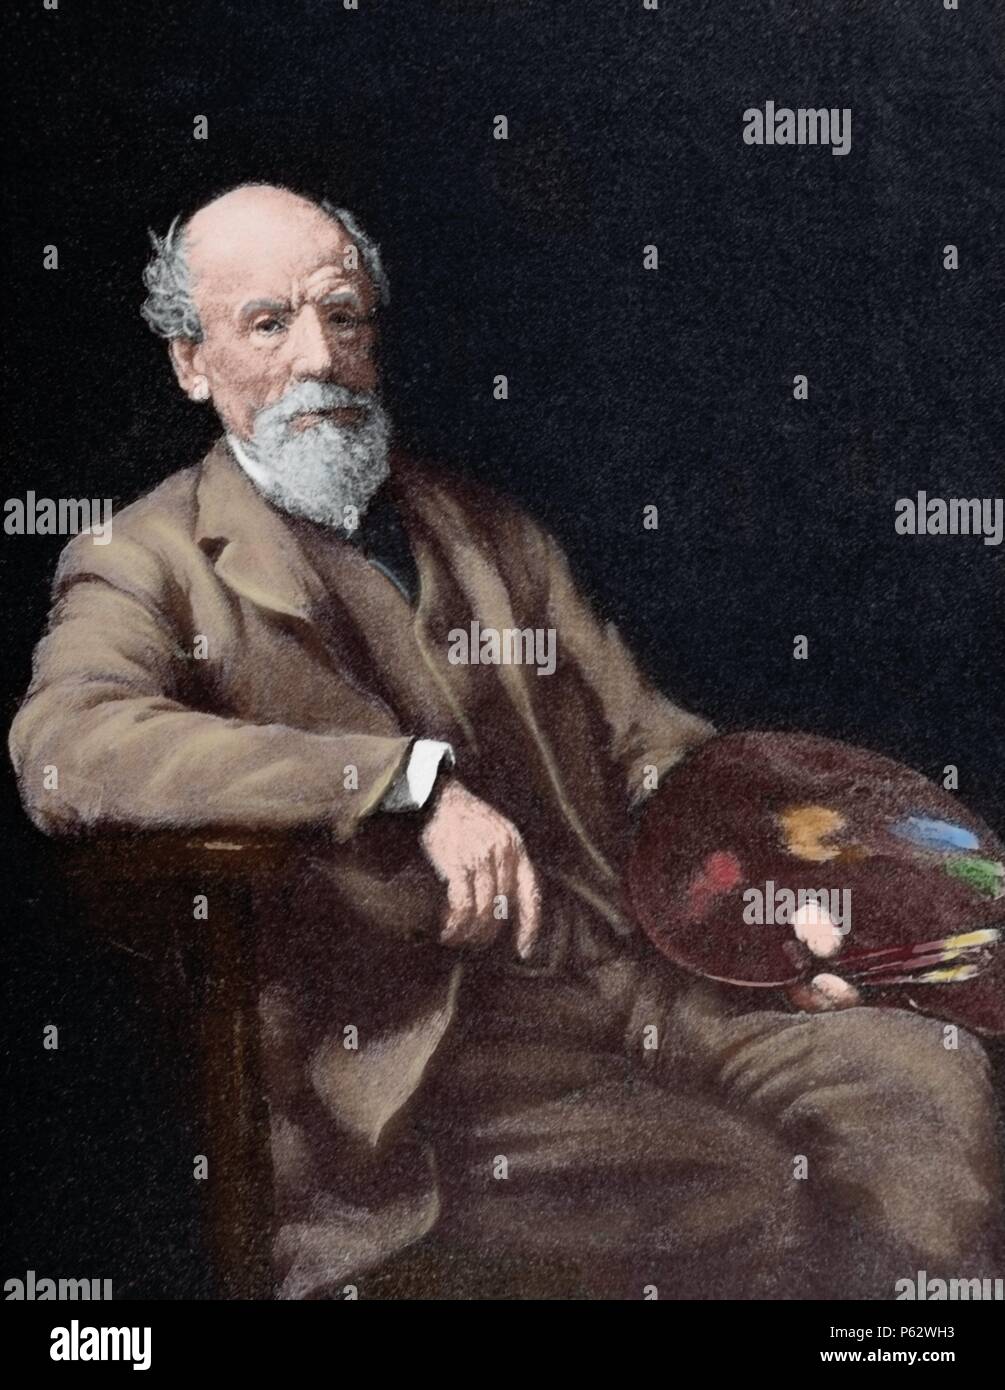 Thomas Sidney Cooper (1803-1902). Peintre anglais. Gravure d'après une peinture par W. Ouless. La péninsule ibérique, l'illustration de 1891. De couleur. Banque D'Images